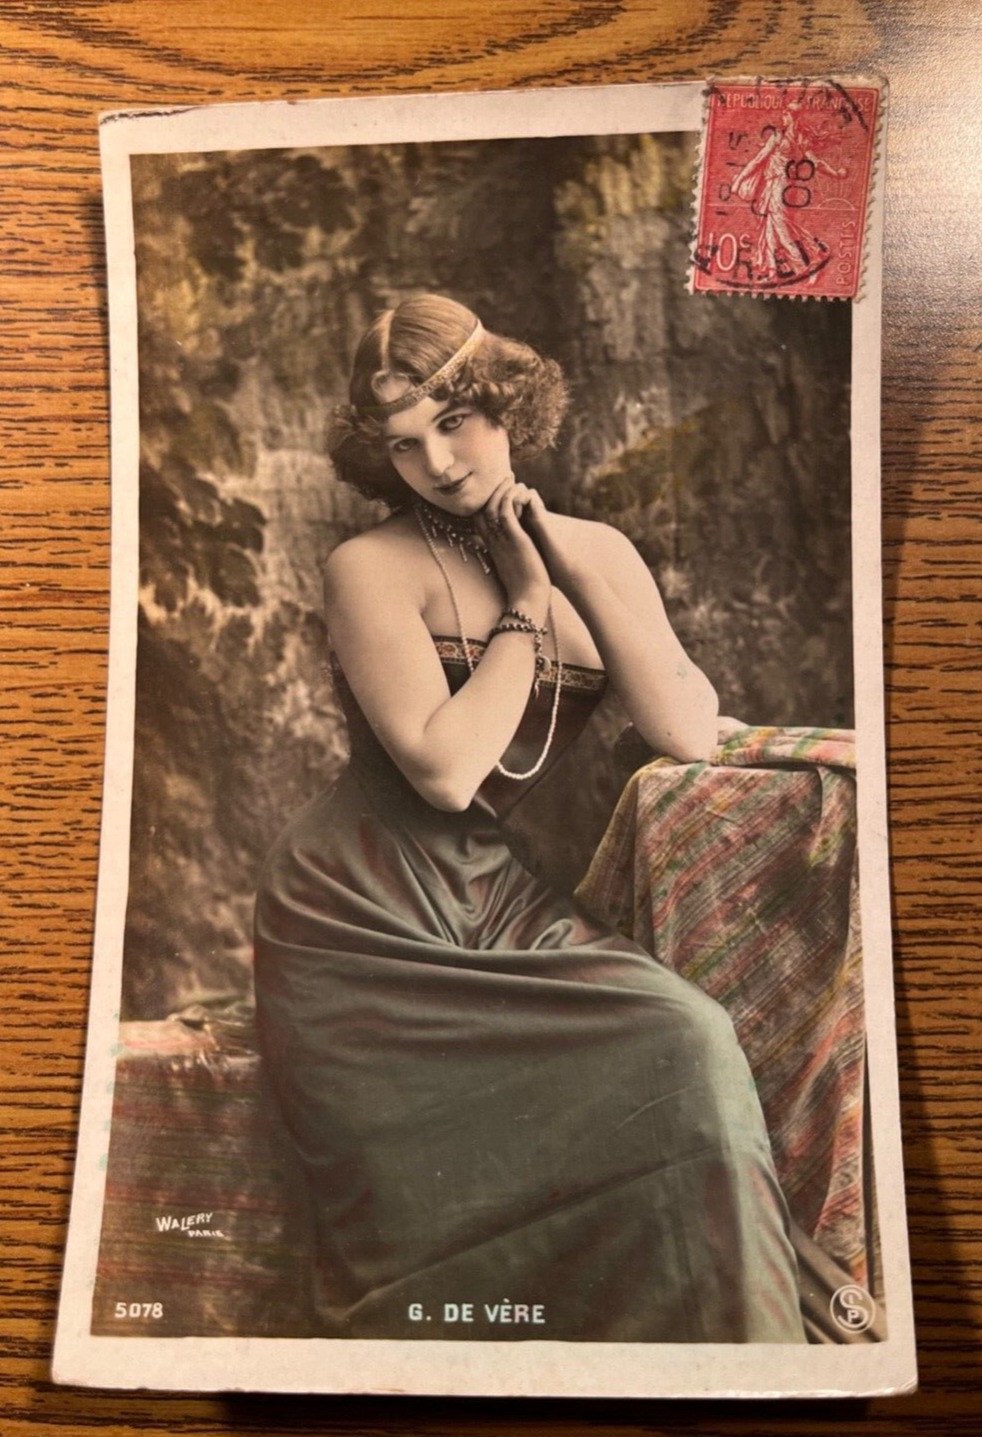 1915 France Risque Walery Paris Color Tinted Photo Postcard Actress G De Vere